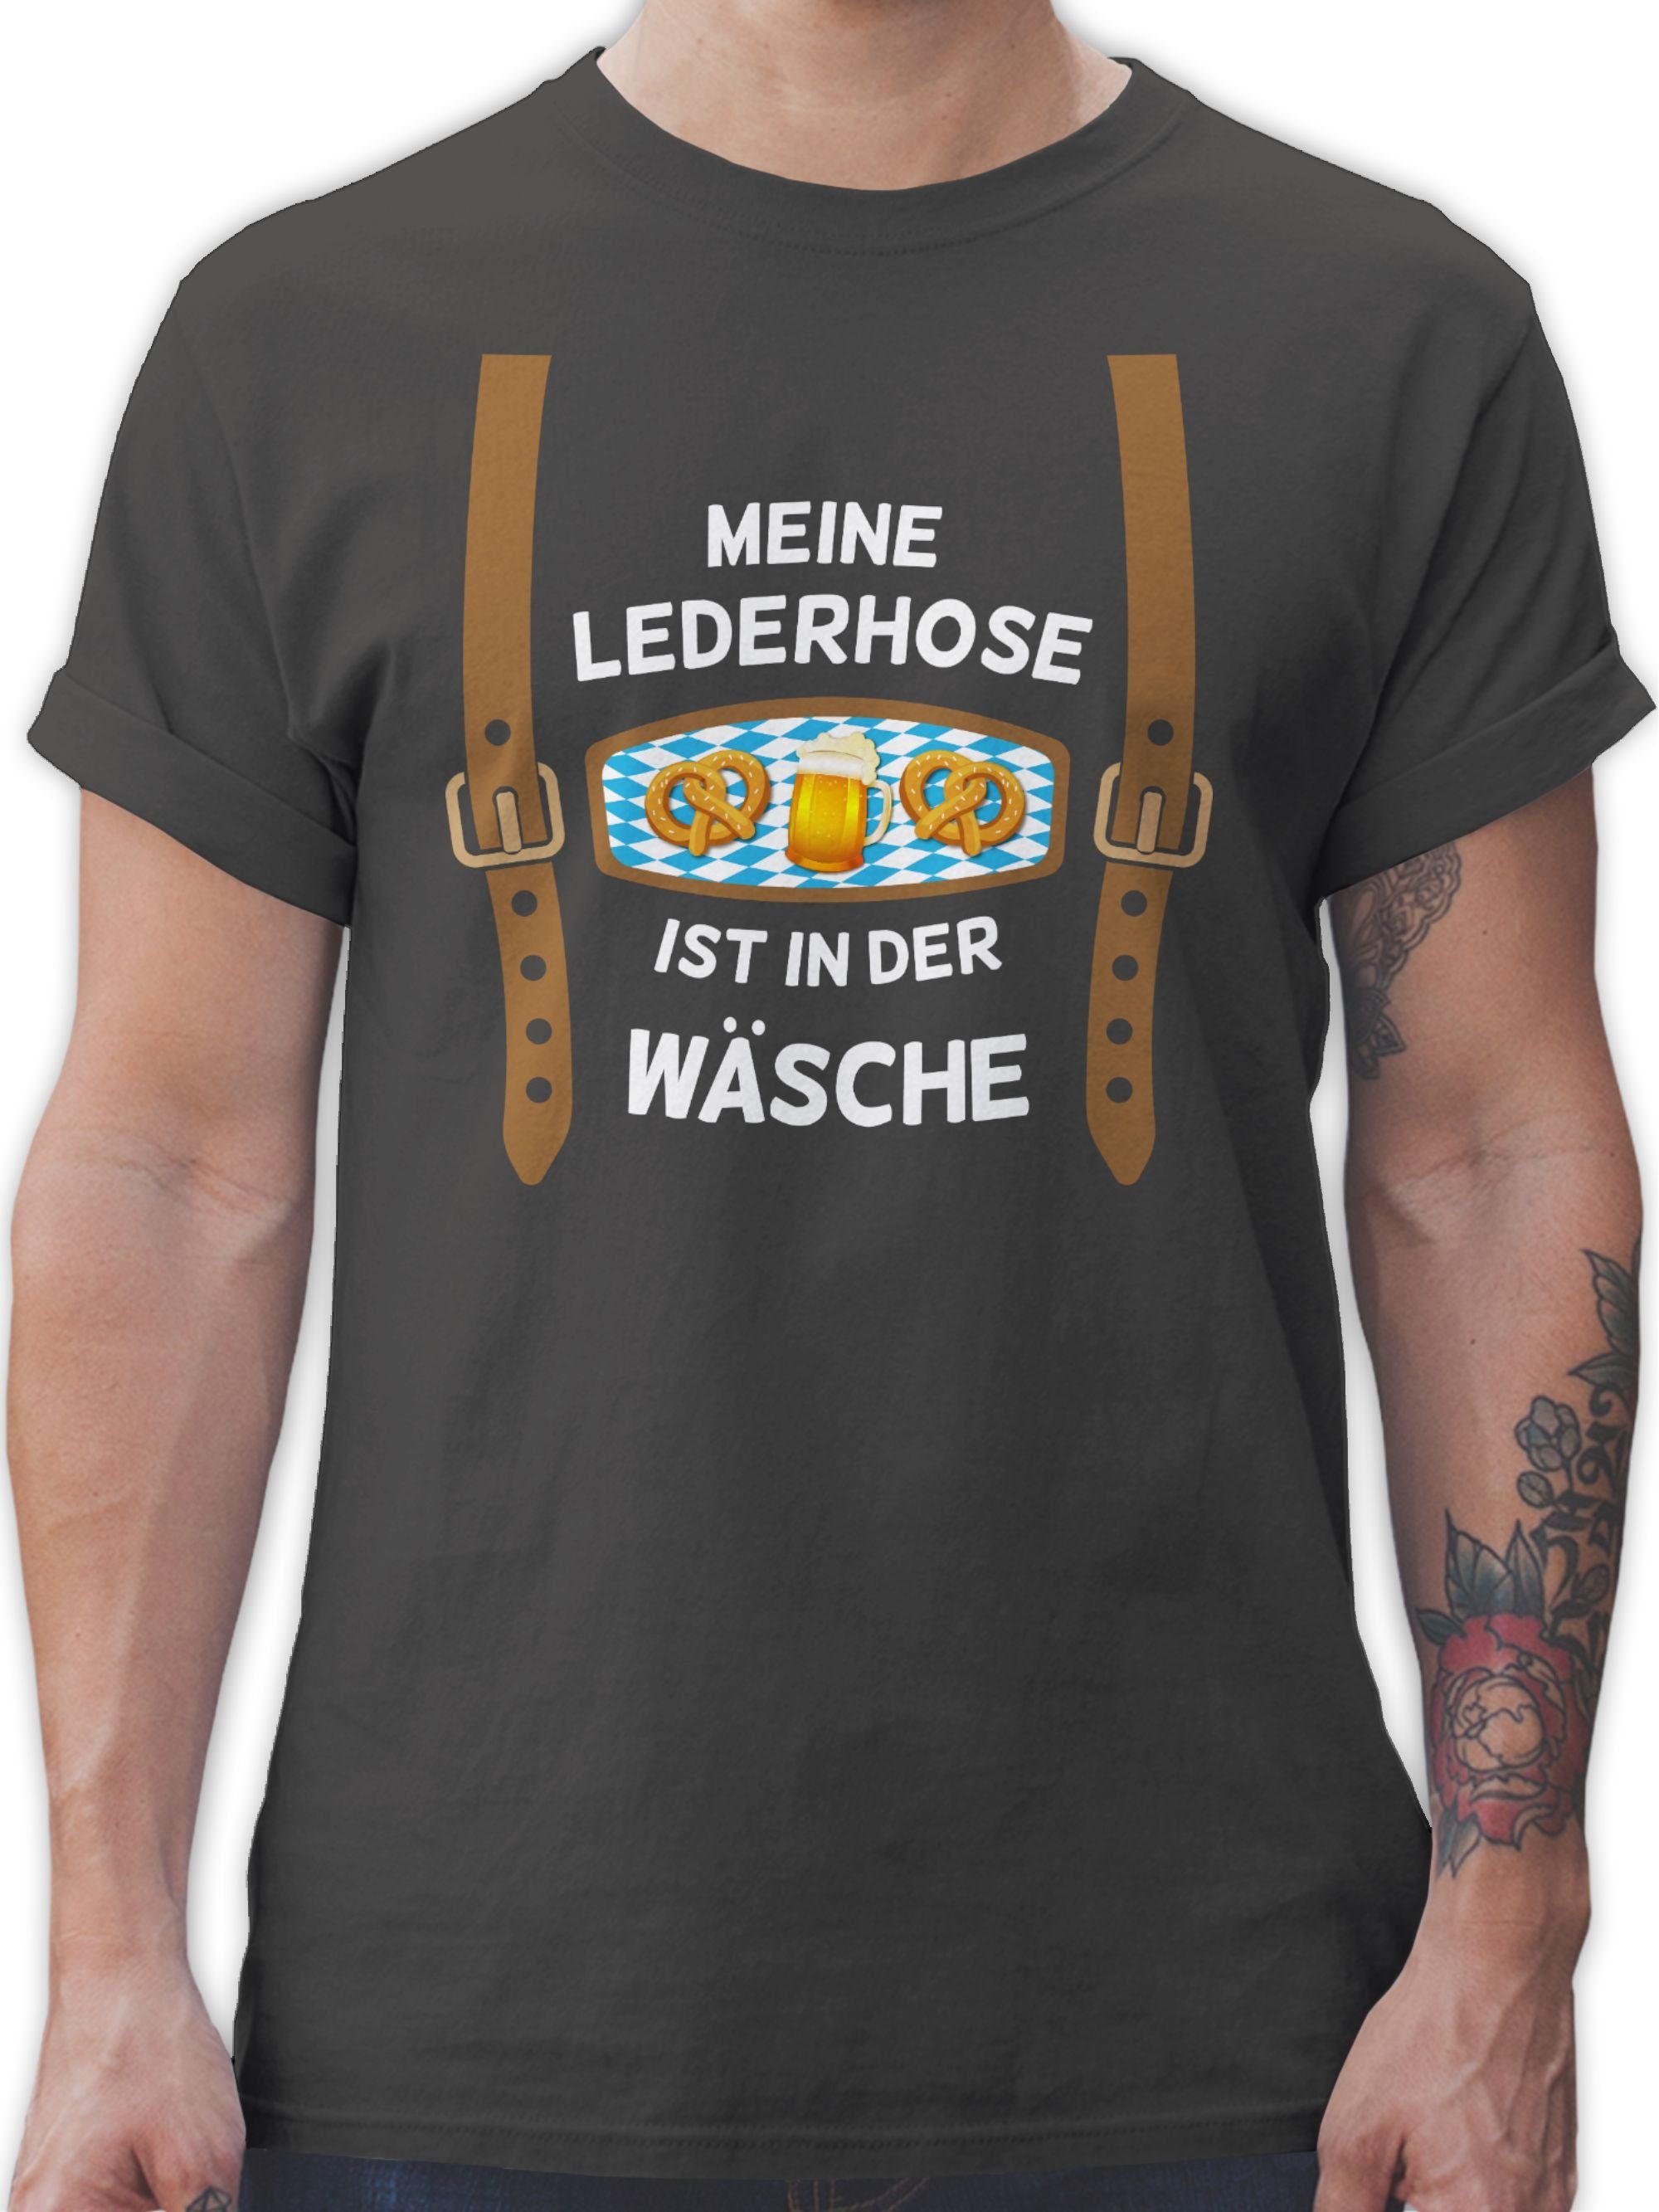 T-Shirt der ist Meine 3 in Mode Shirtracer Dunkelgrau Oktoberfest Herren Wäsche Lederhose für